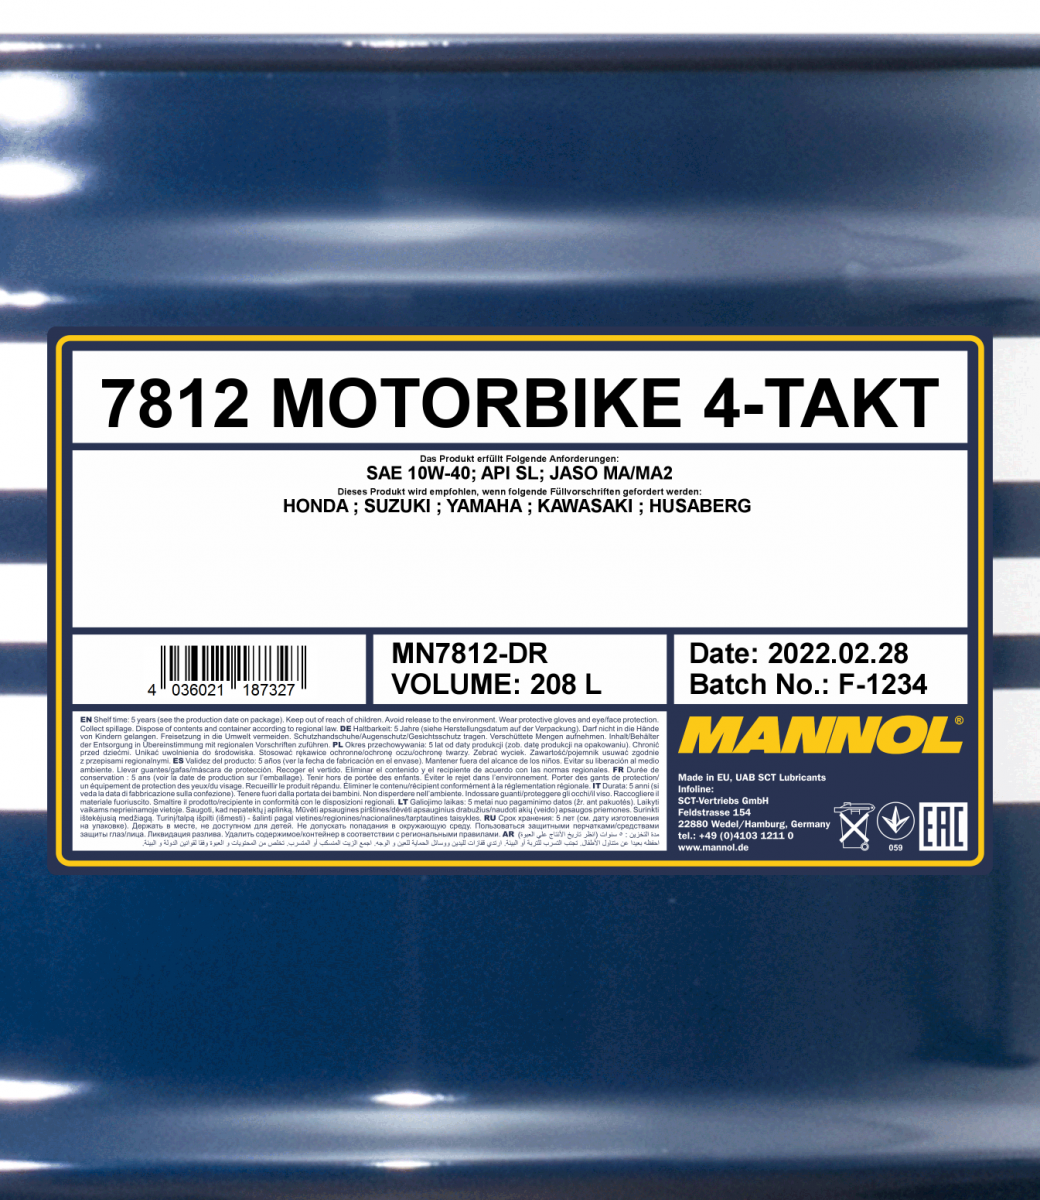 10W-40 Mannol 7812 Motorbike 4-Takt Motoröl Motorrad 208 Liter